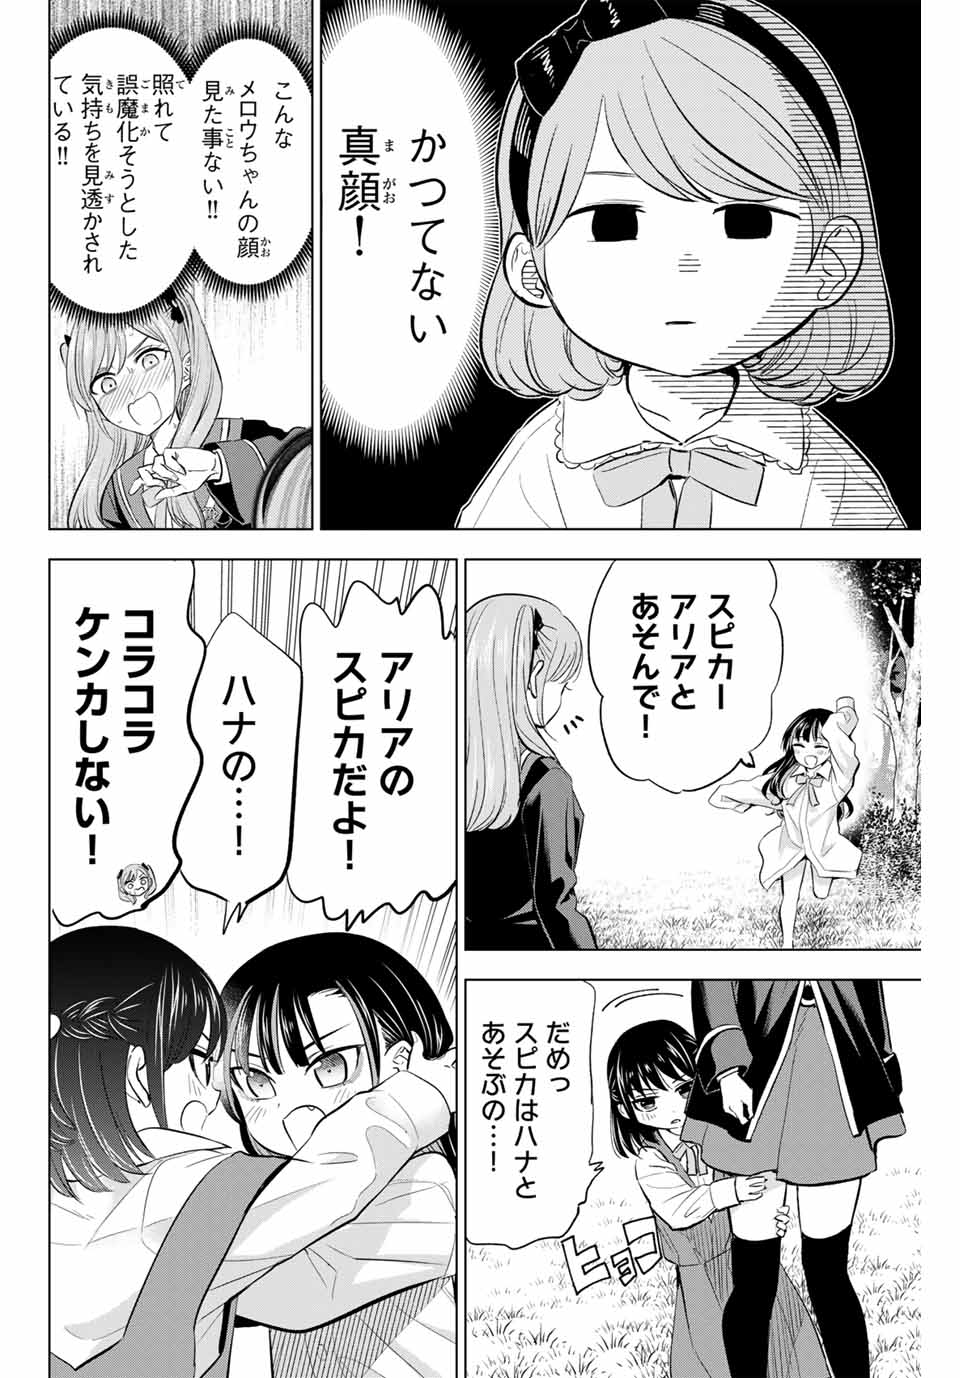 Kuroneko to Majo no Kyoushitsu - Chapter 63 - Page 4